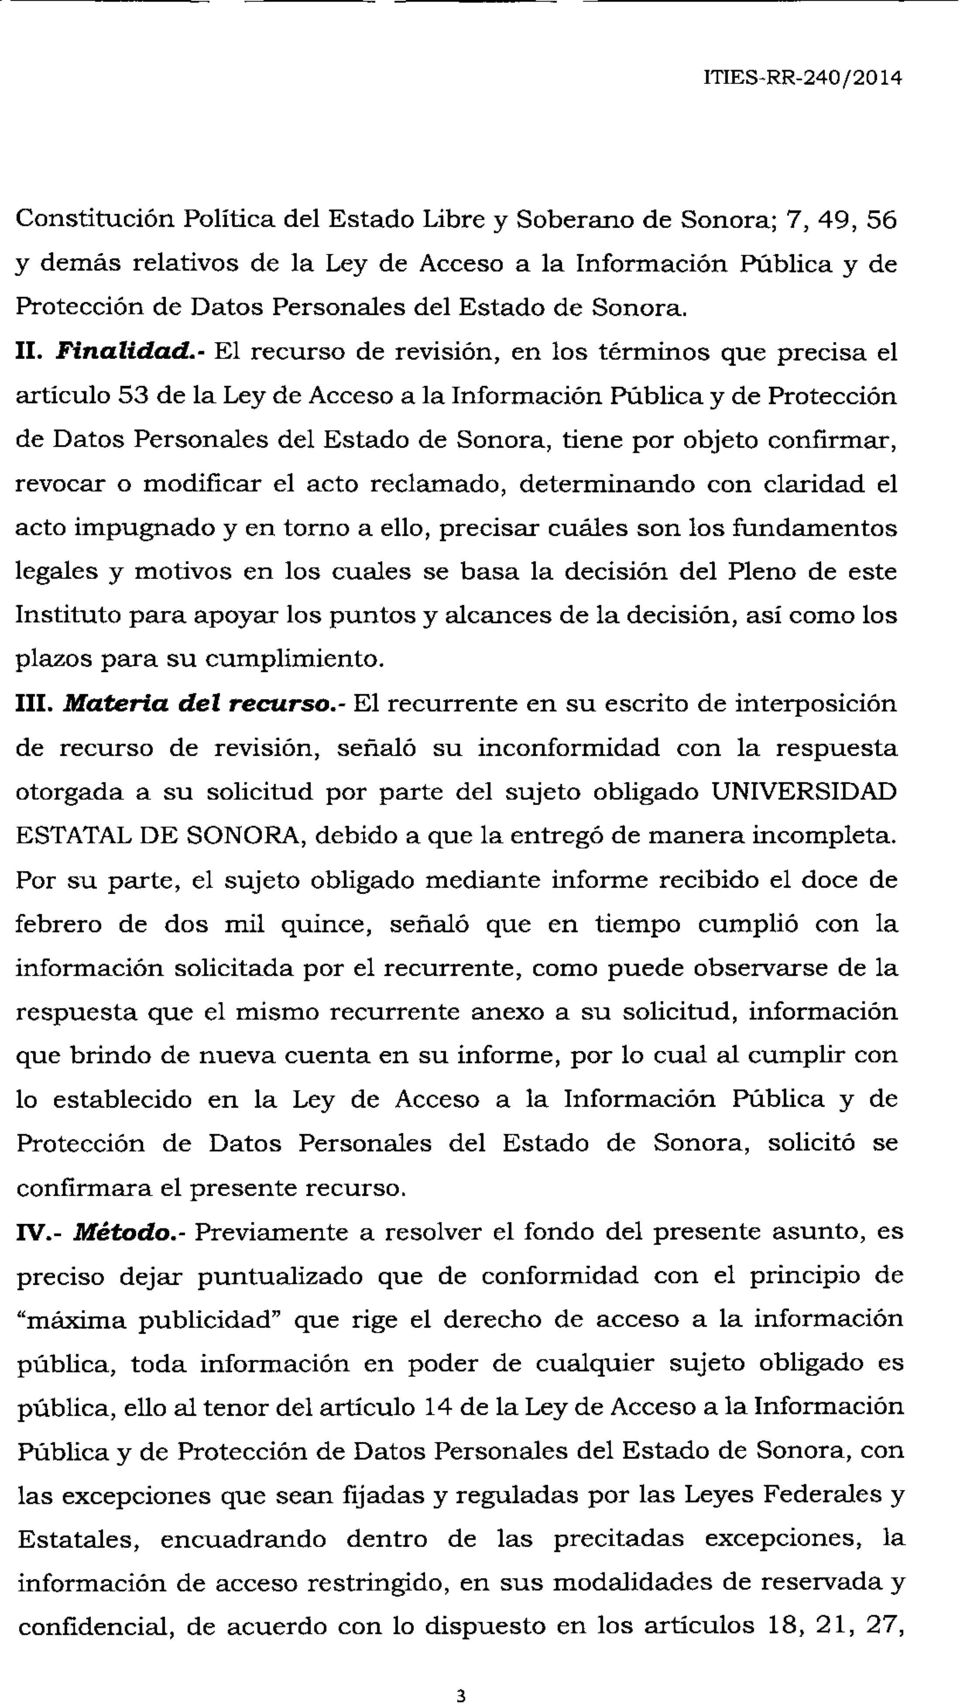 - El recurso de revisión, en los términos que precisa el artículo 53 de la Leyde Accesoa la Información Pública y de Protección de Datos Personales del Estado de Sonora, tiene por objeto confirmar,